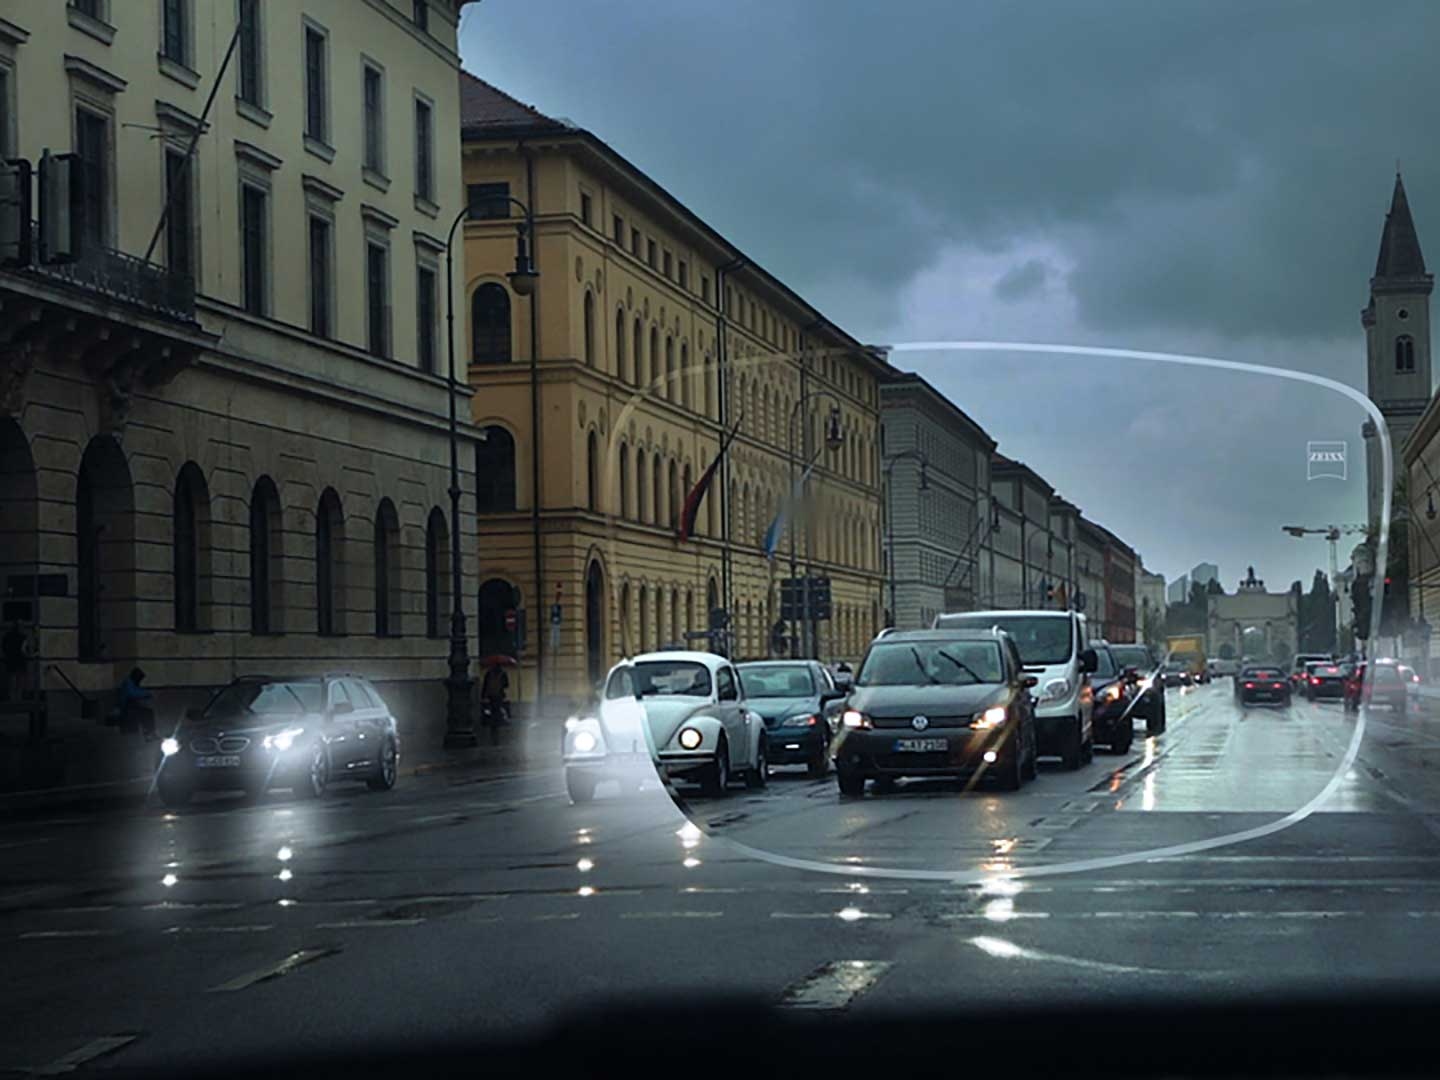 Imaginea prezintă vizibilitate scăzută în condiții de lumină redusă pe o stradă. Punctul de vedere este interiorul unei mașini, așa cum se vede prin lentilele de ochelari. 